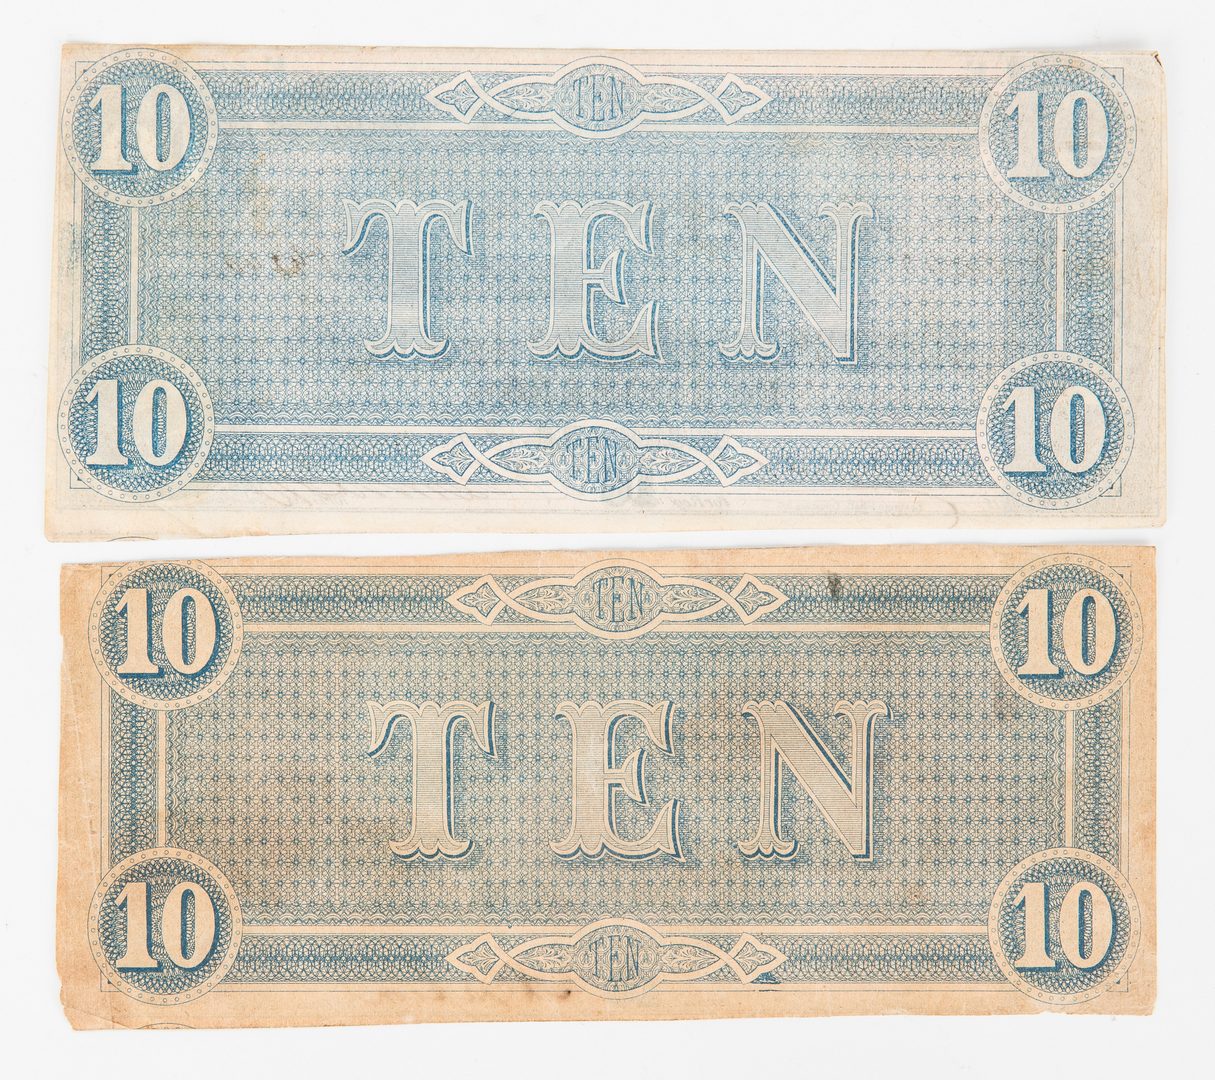 Lot 175: 15 Civil War items, incl. 1864 bond receipt, buttons